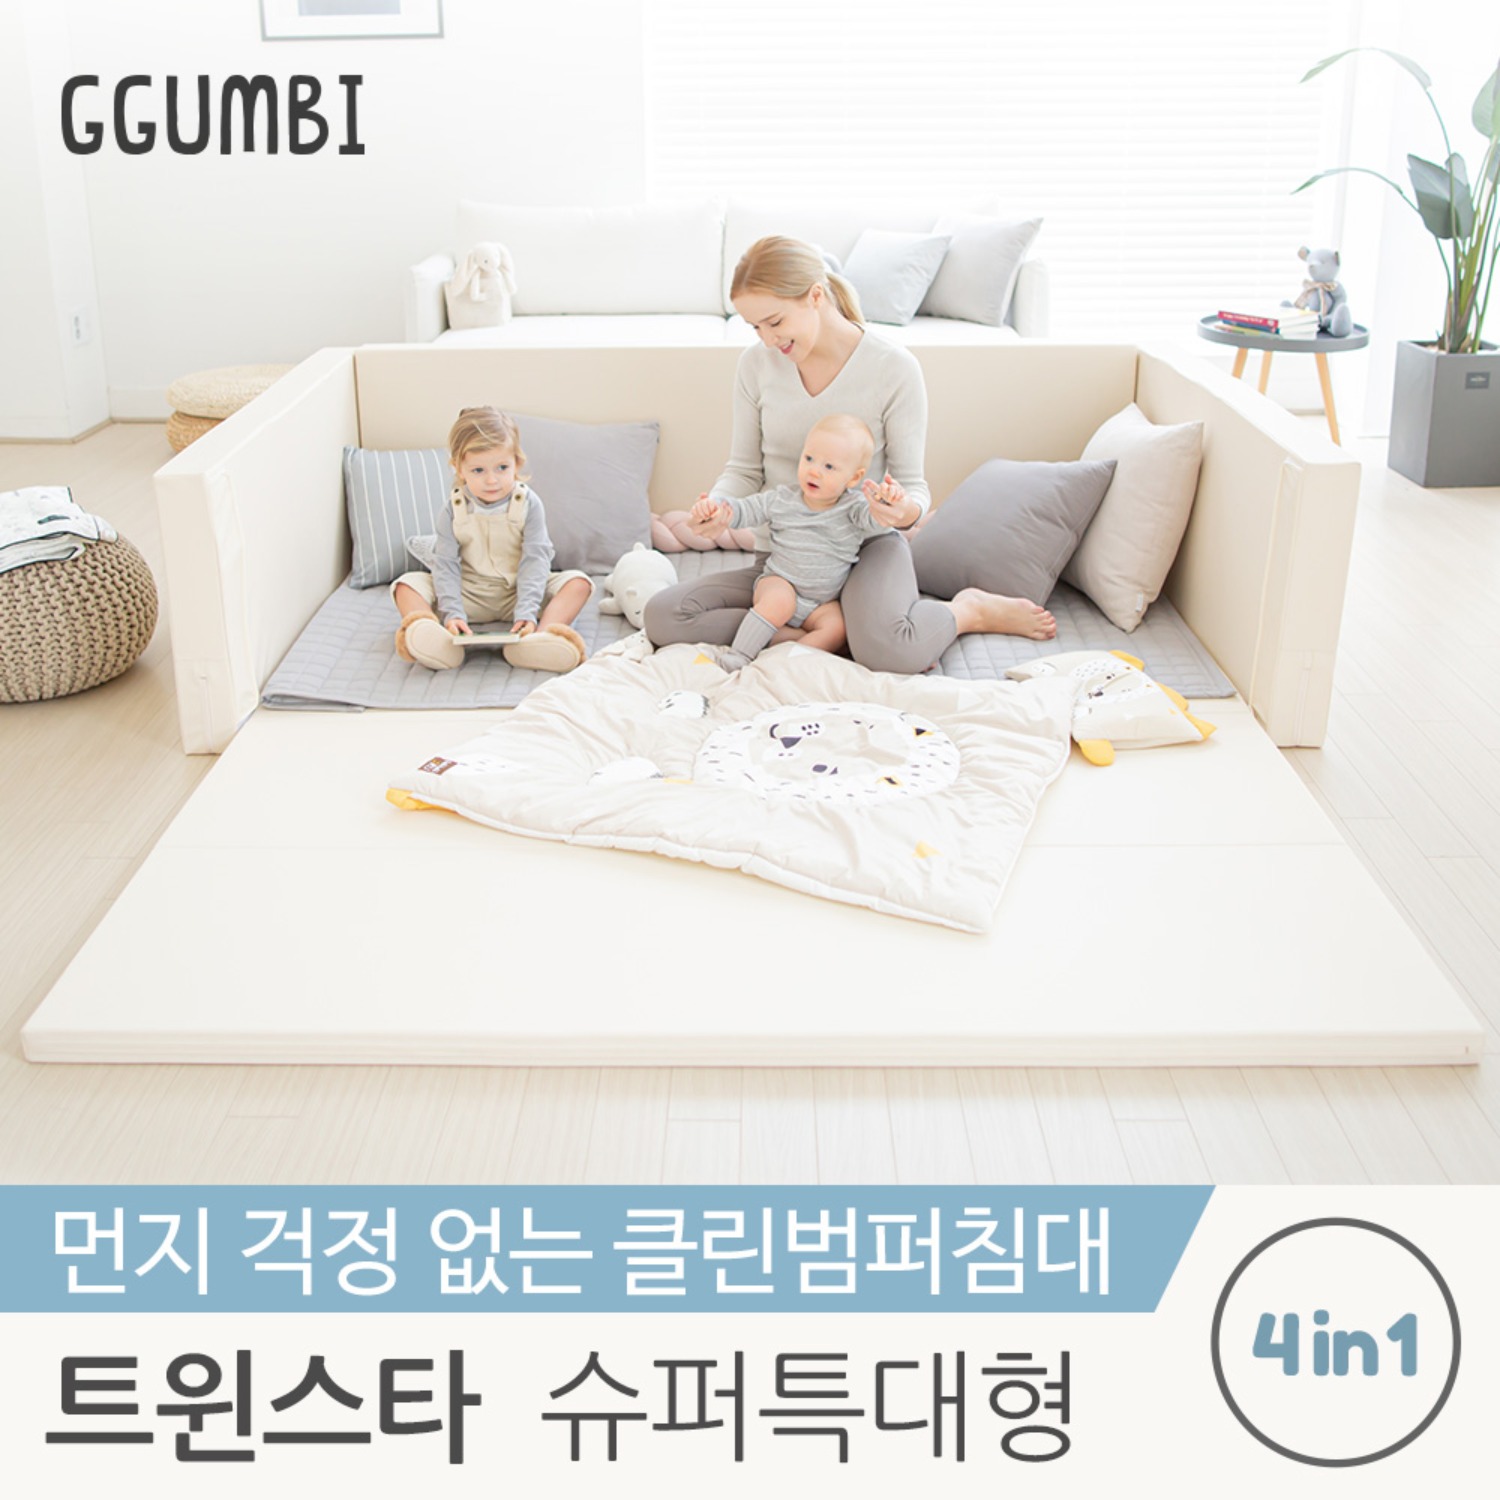 [꿈비] 트윈스타 클린범퍼침대 슈퍼특대형 유아 침대 놀이방 매트